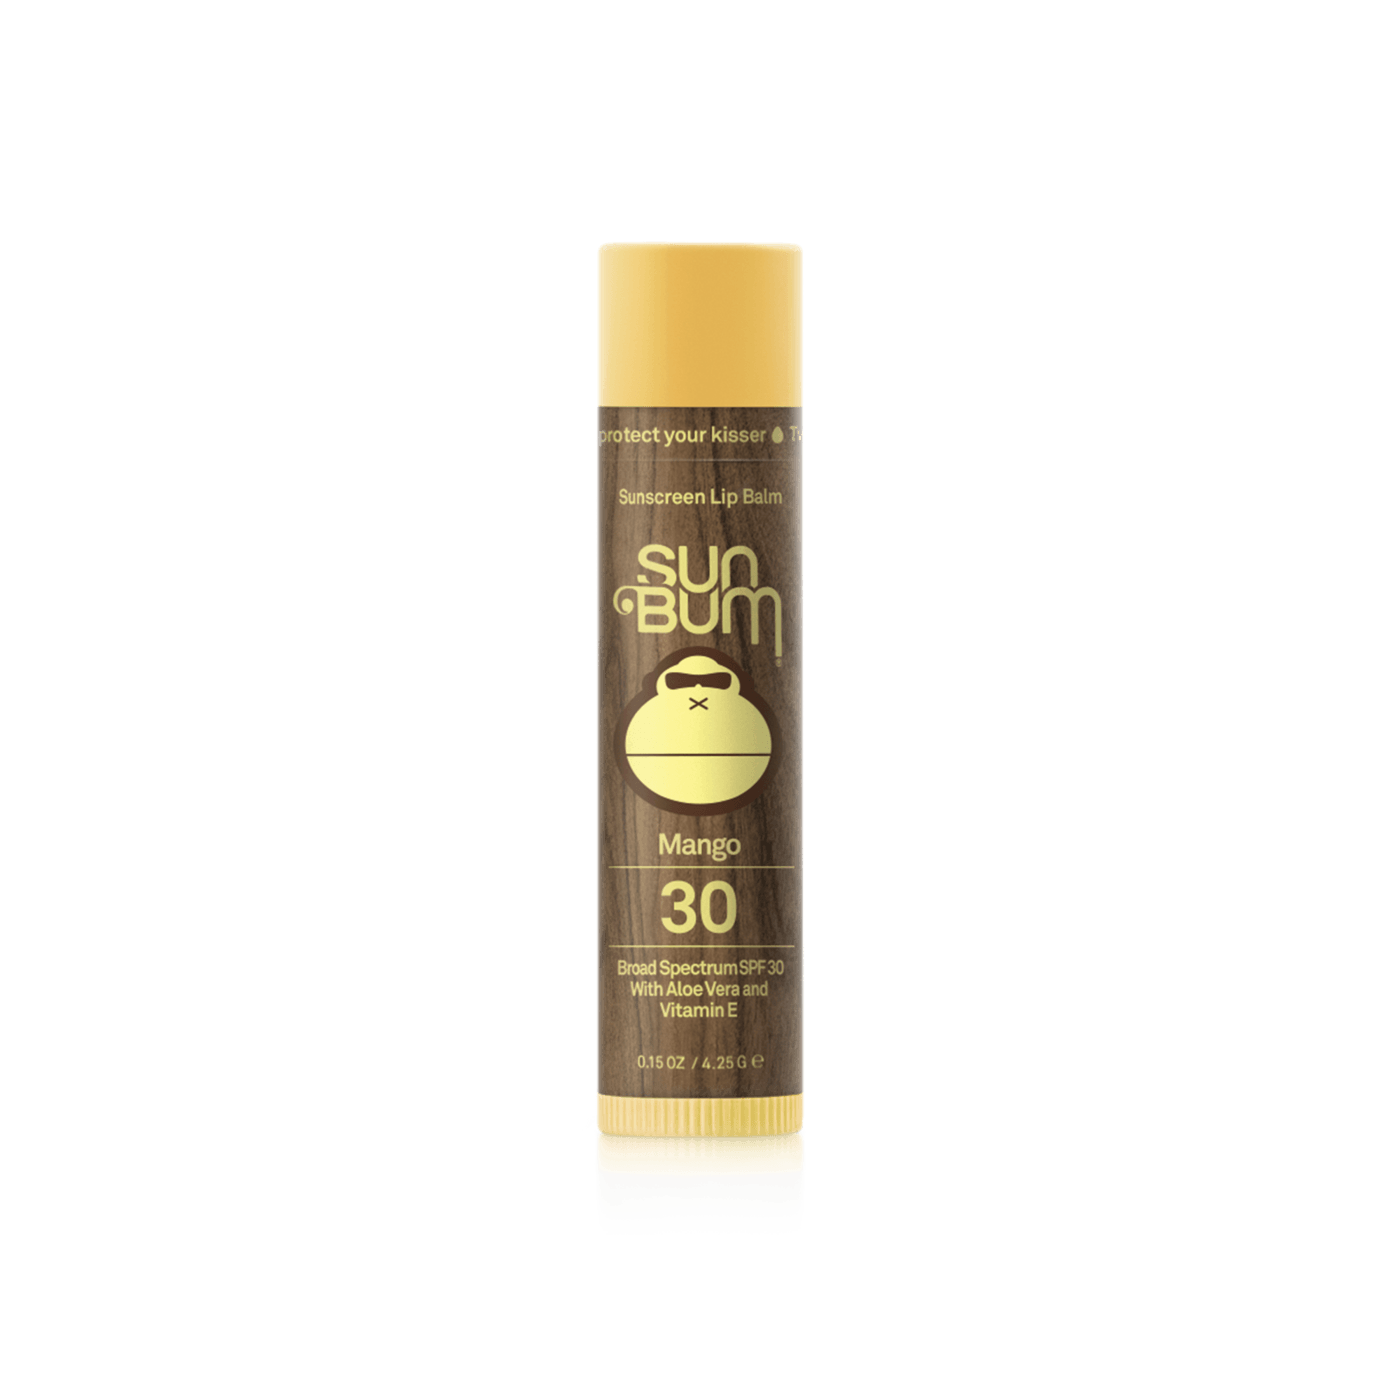 SUN BUM Original SPF 30 Sunscreen Lip Balm Mango ACCESSORIES - Sunscreen Sun Bum 